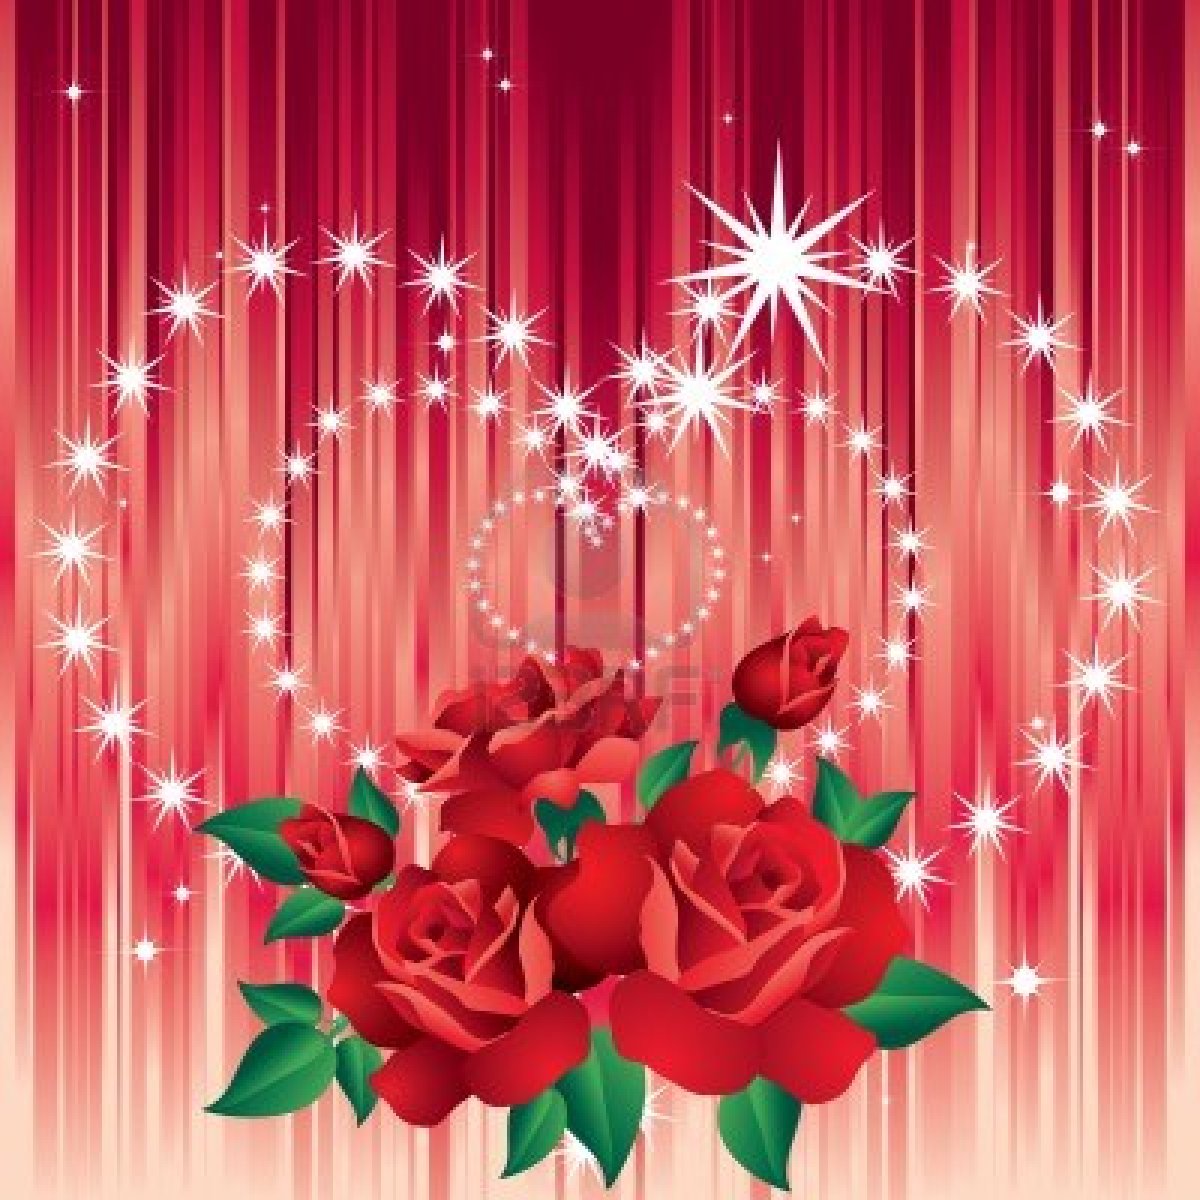 47+] Wallpaper of Roses and Hearts - WallpaperSafari